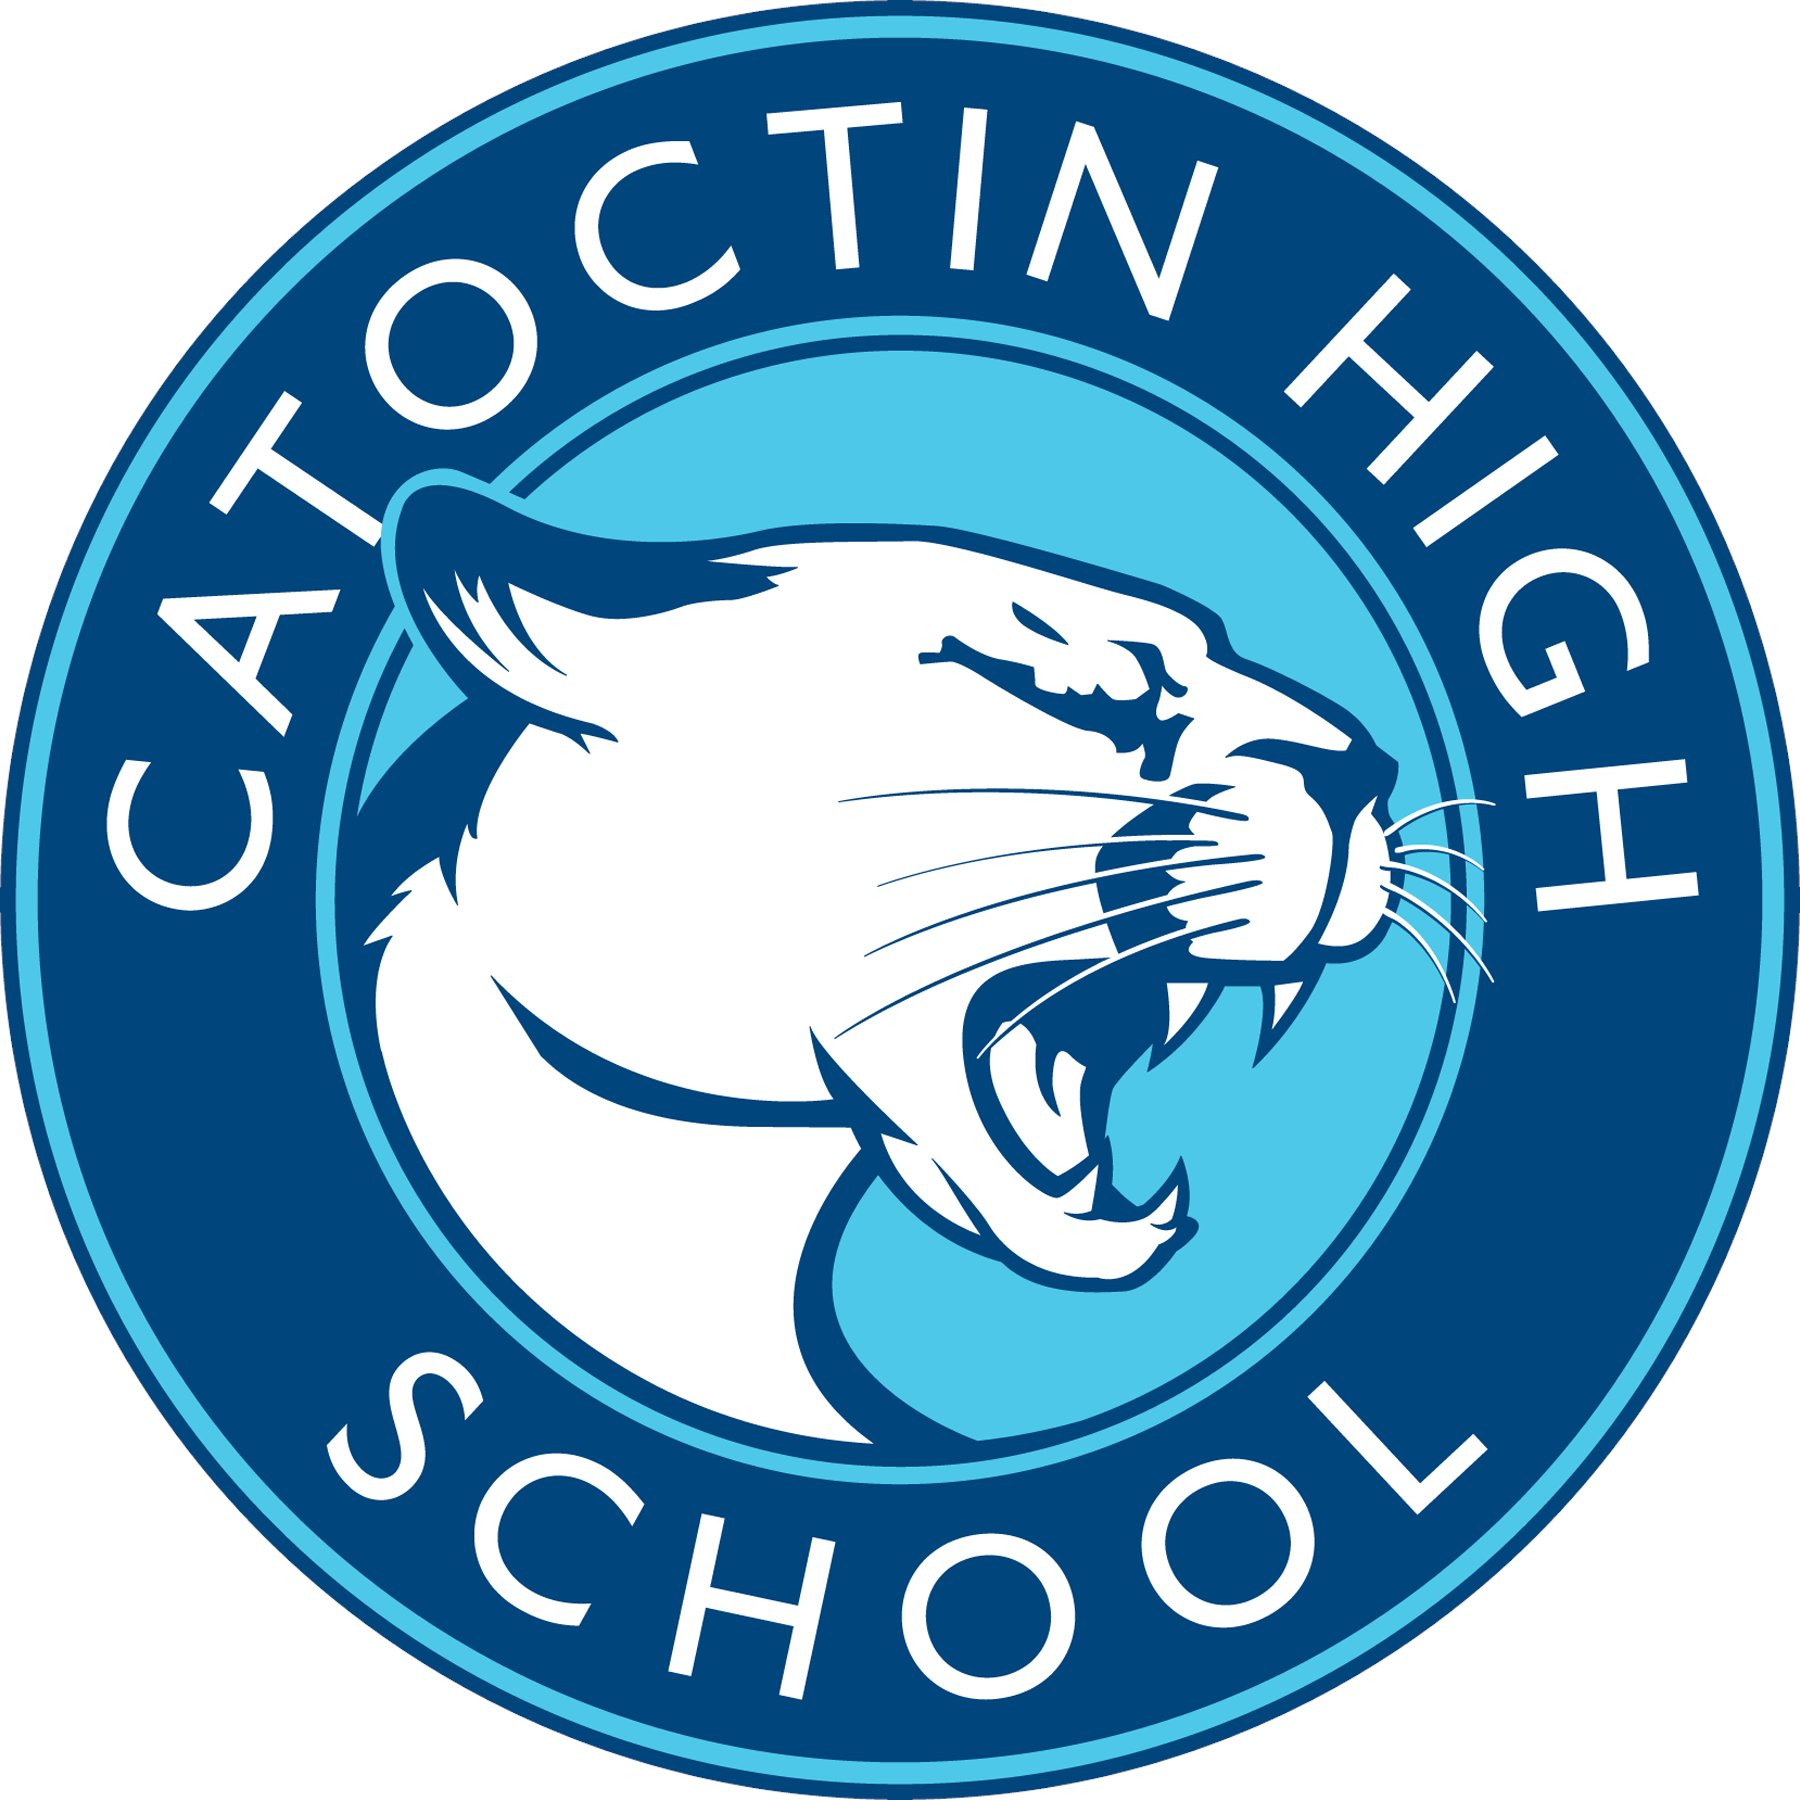 Catoctin High School